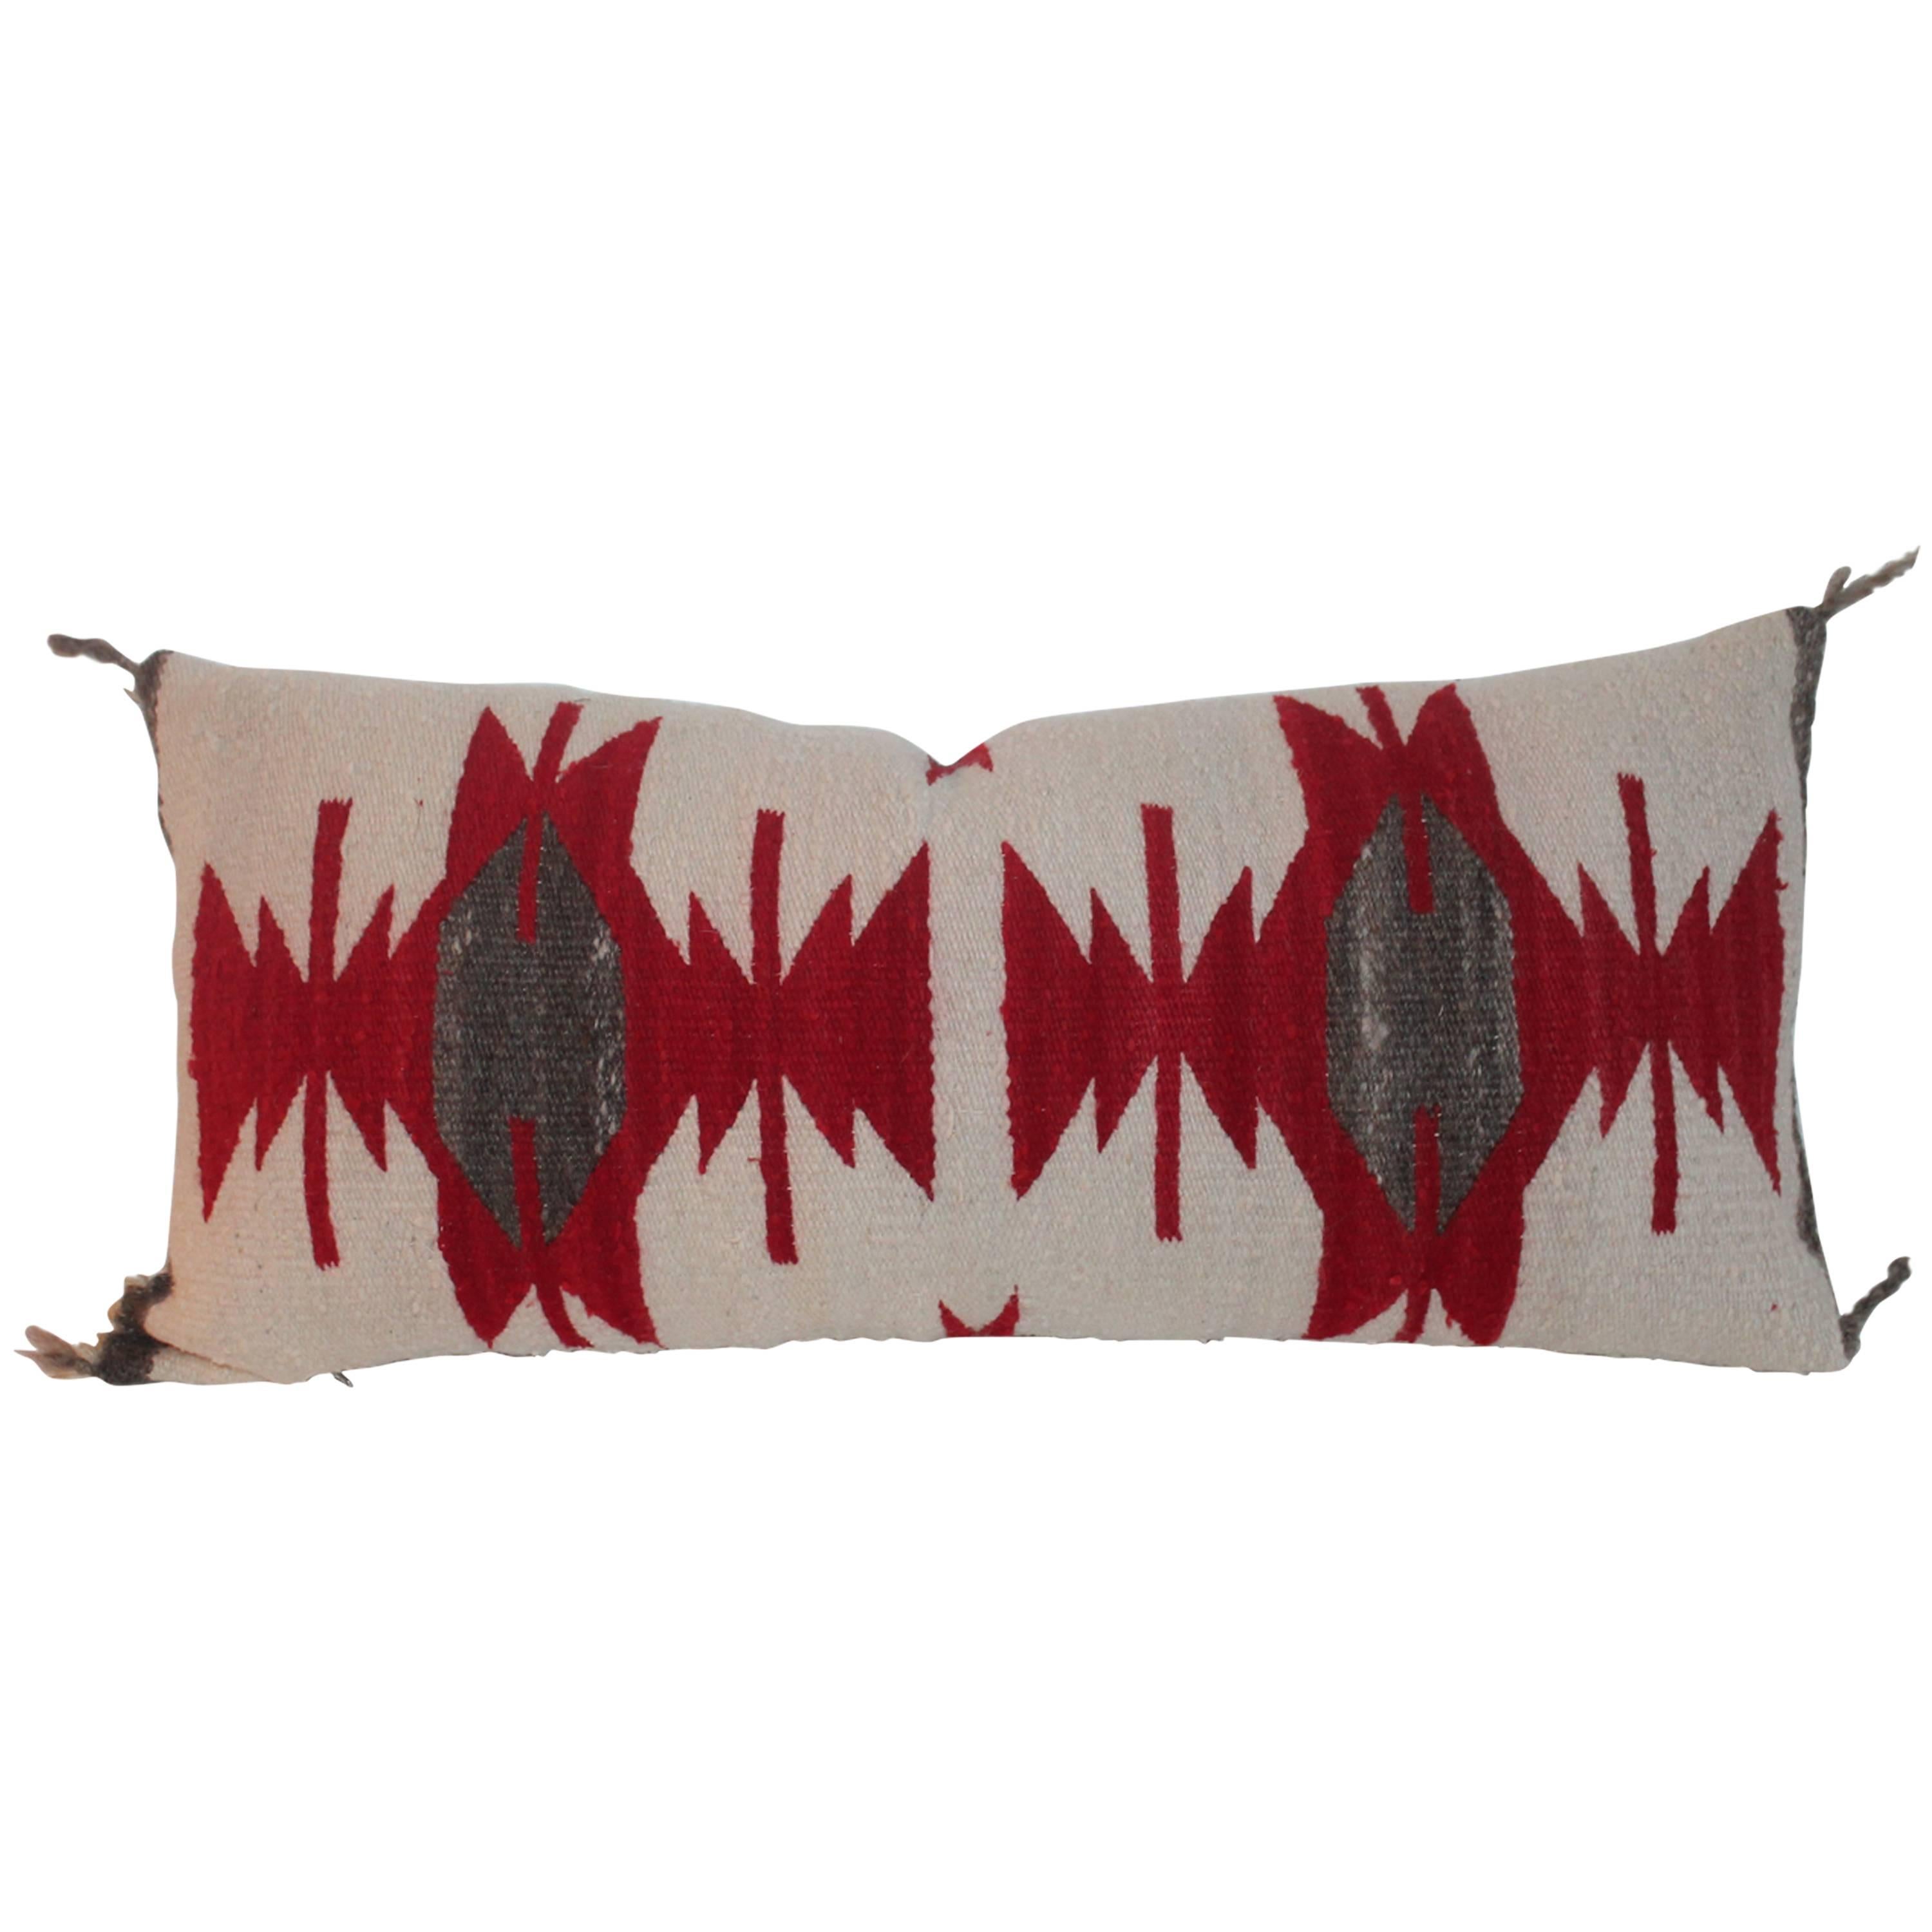 Navajo Indian Weaving / Saddle Blanket Pillow